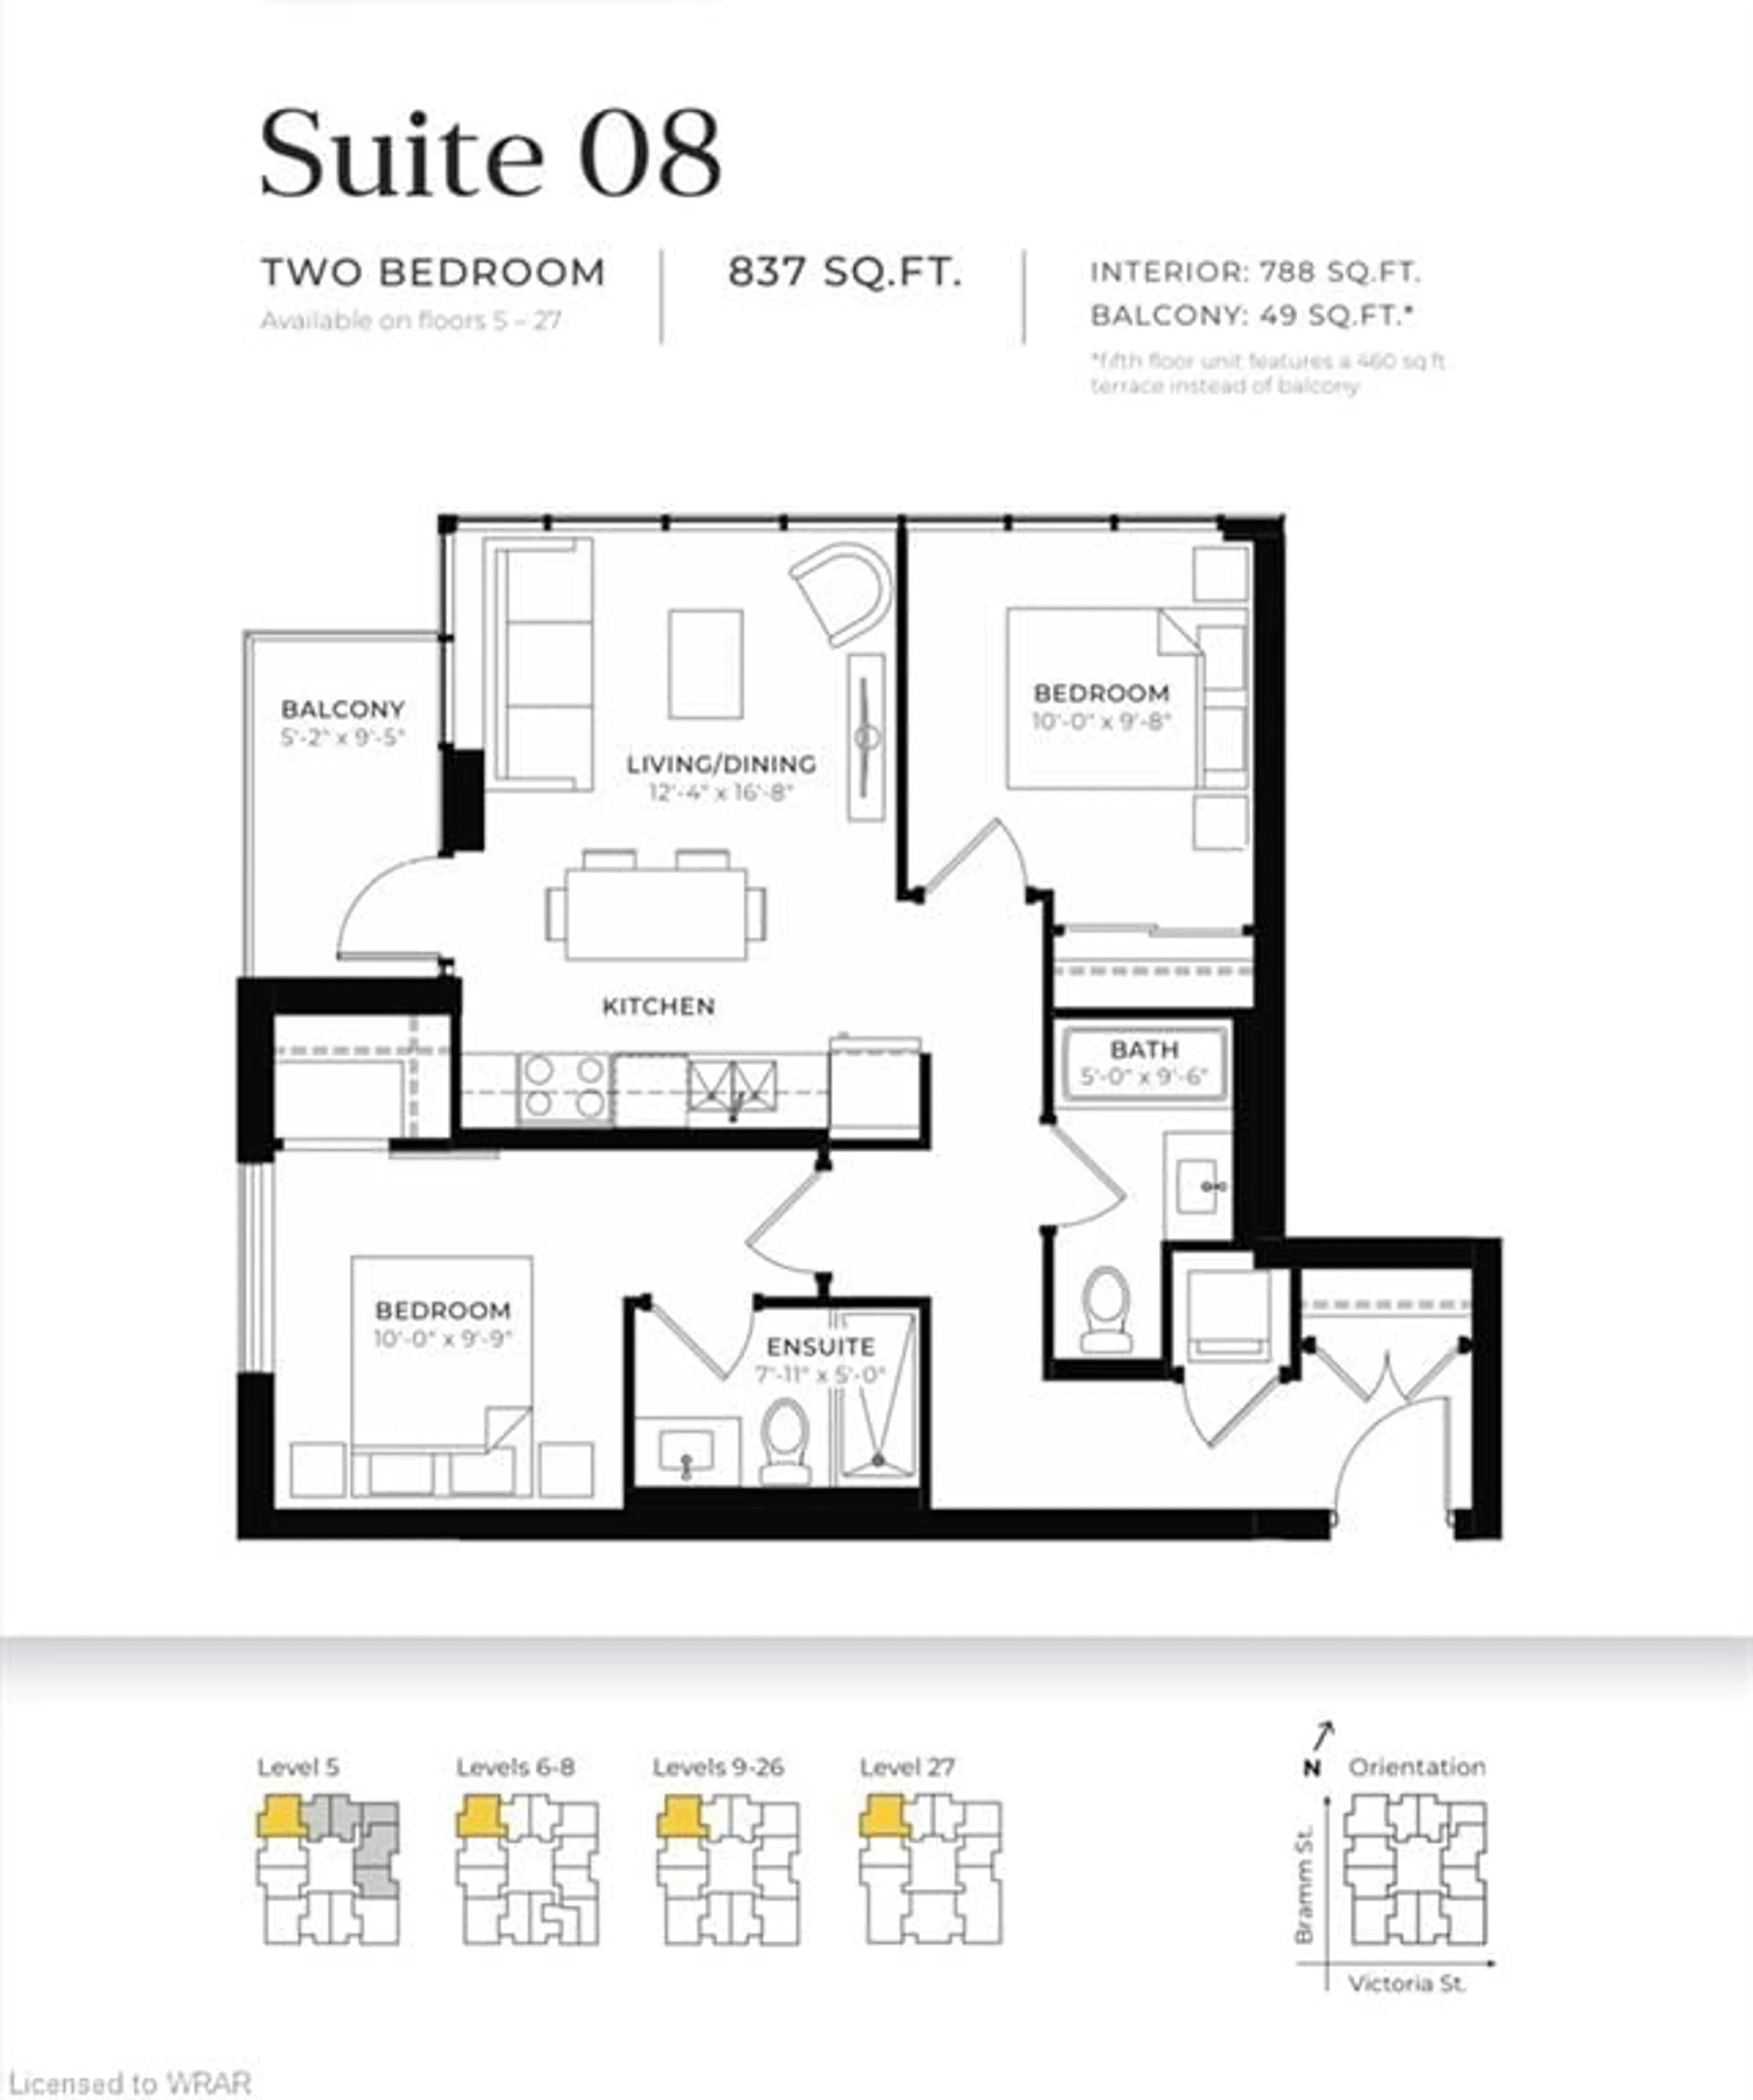 Floor plan for 108 Garment St #1708, Kitchener Ontario N2G 0E2